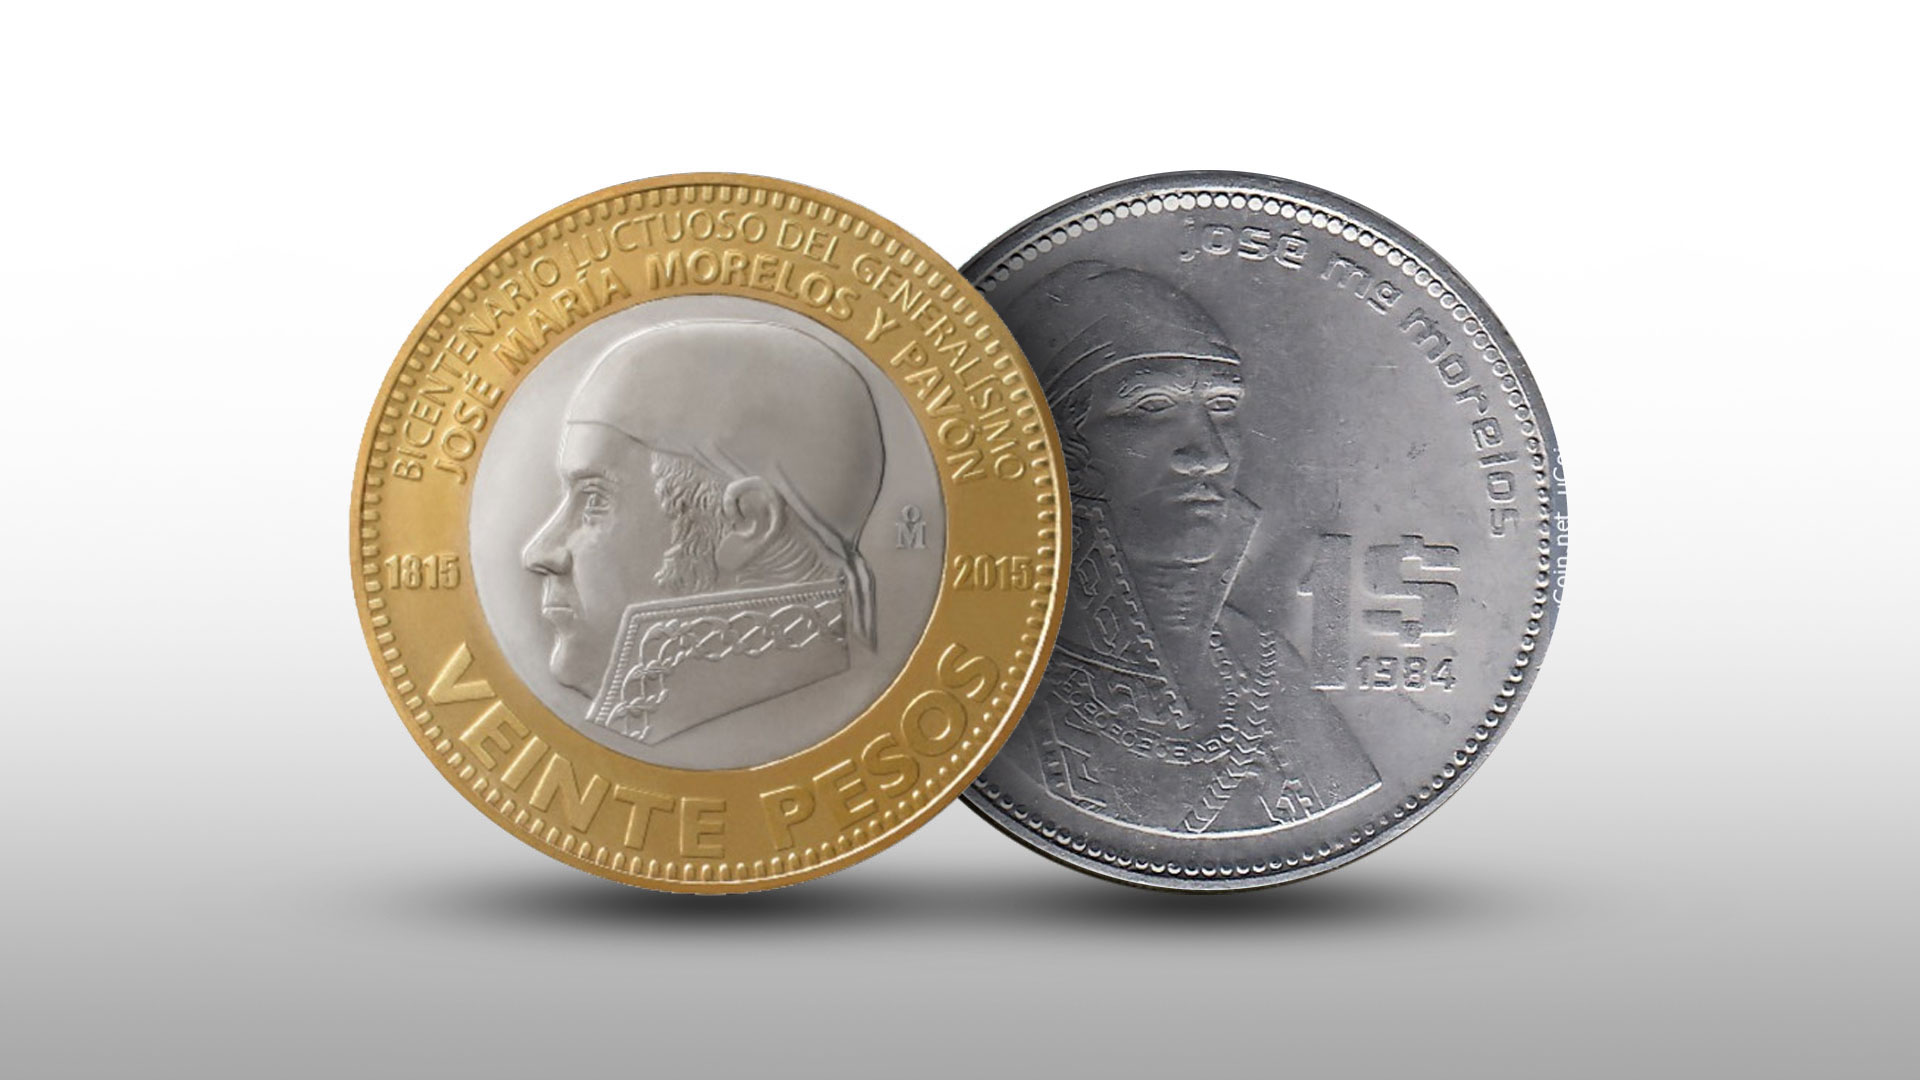 Dos antiguas monedas de 1 peso de Morelos se cotizan juntas en más de  50,000 pesos por internet - Infobae